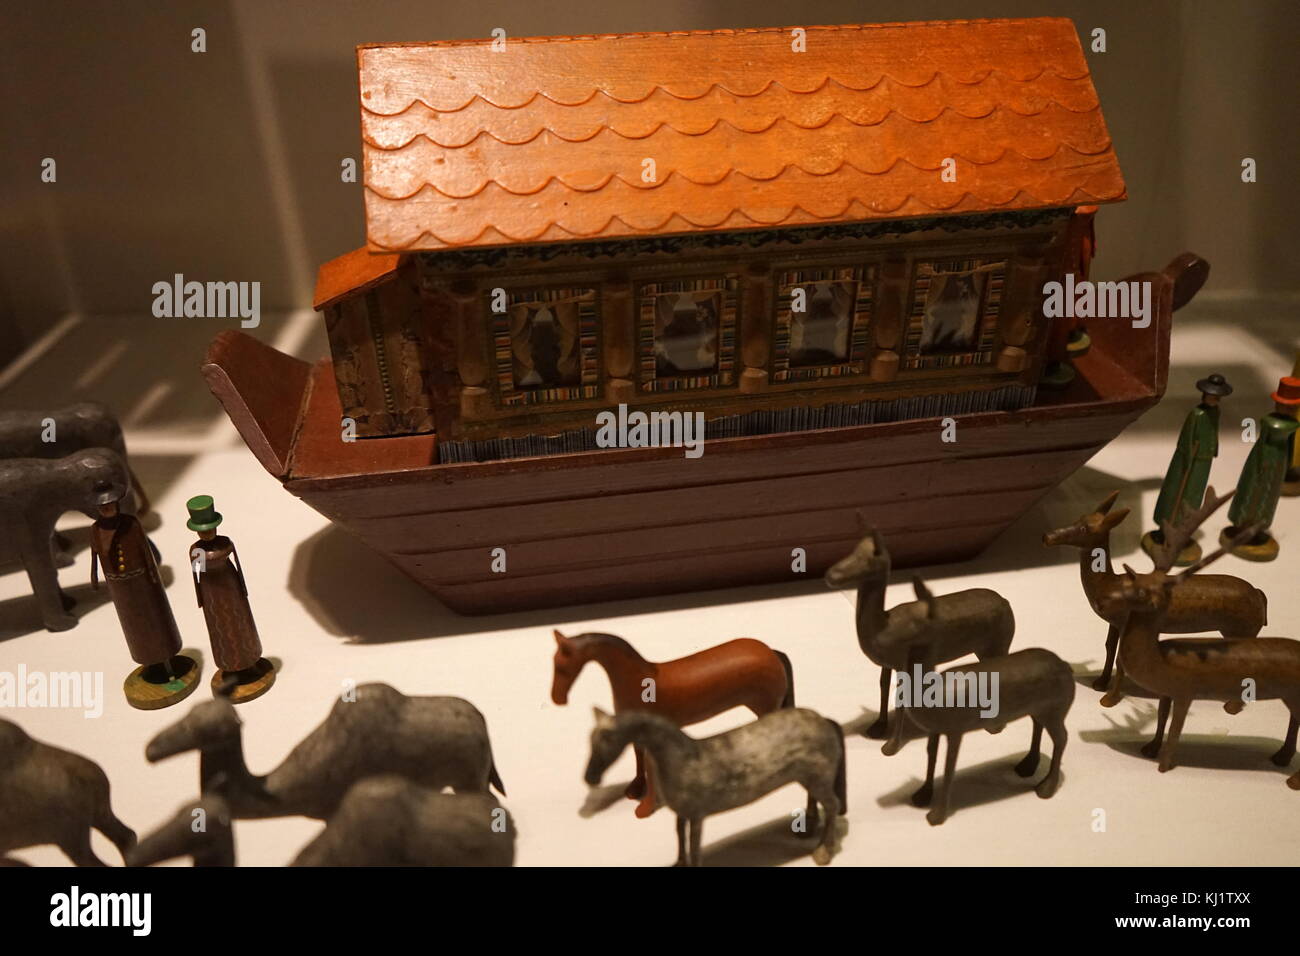 Statuine di legno utilizzati per ricreare la storia dell'Arca di Noè. Gli animali sono mostrati qui in coppie pronte a bordo dell'arca. Datata del XIX secolo Foto Stock